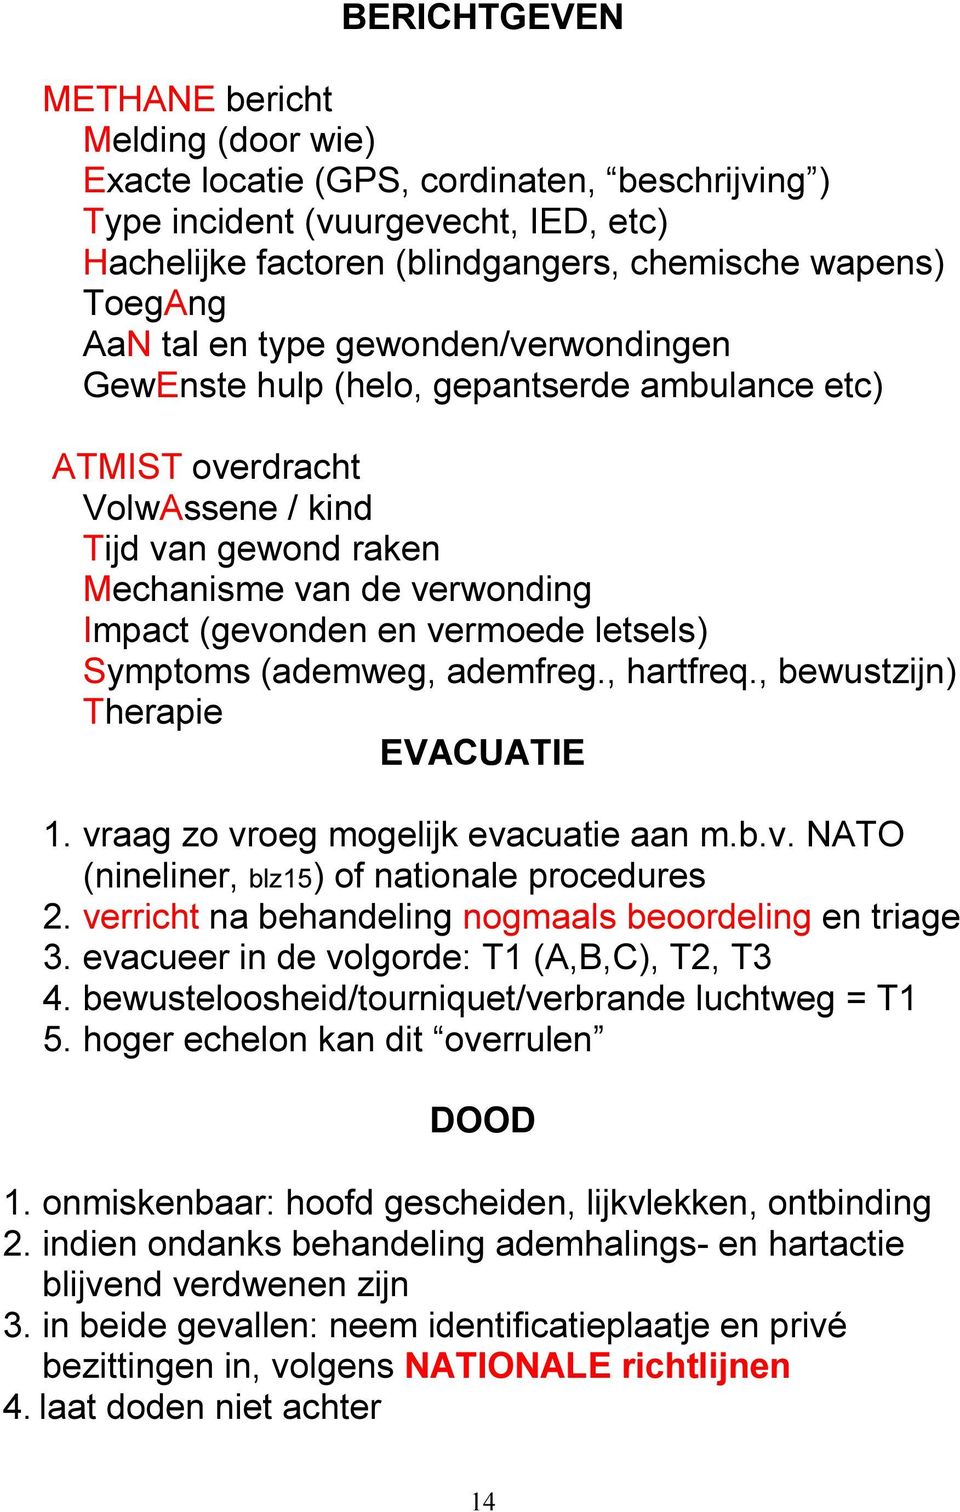 letsels) Symptoms (ademweg, ademfreg., hartfreq., bewustzijn) Therapie EVACUATIE 1. vraag zo vroeg mogelijk evacuatie aan m.b.v. NATO (nineliner, blz15) of nationale procedures 2.